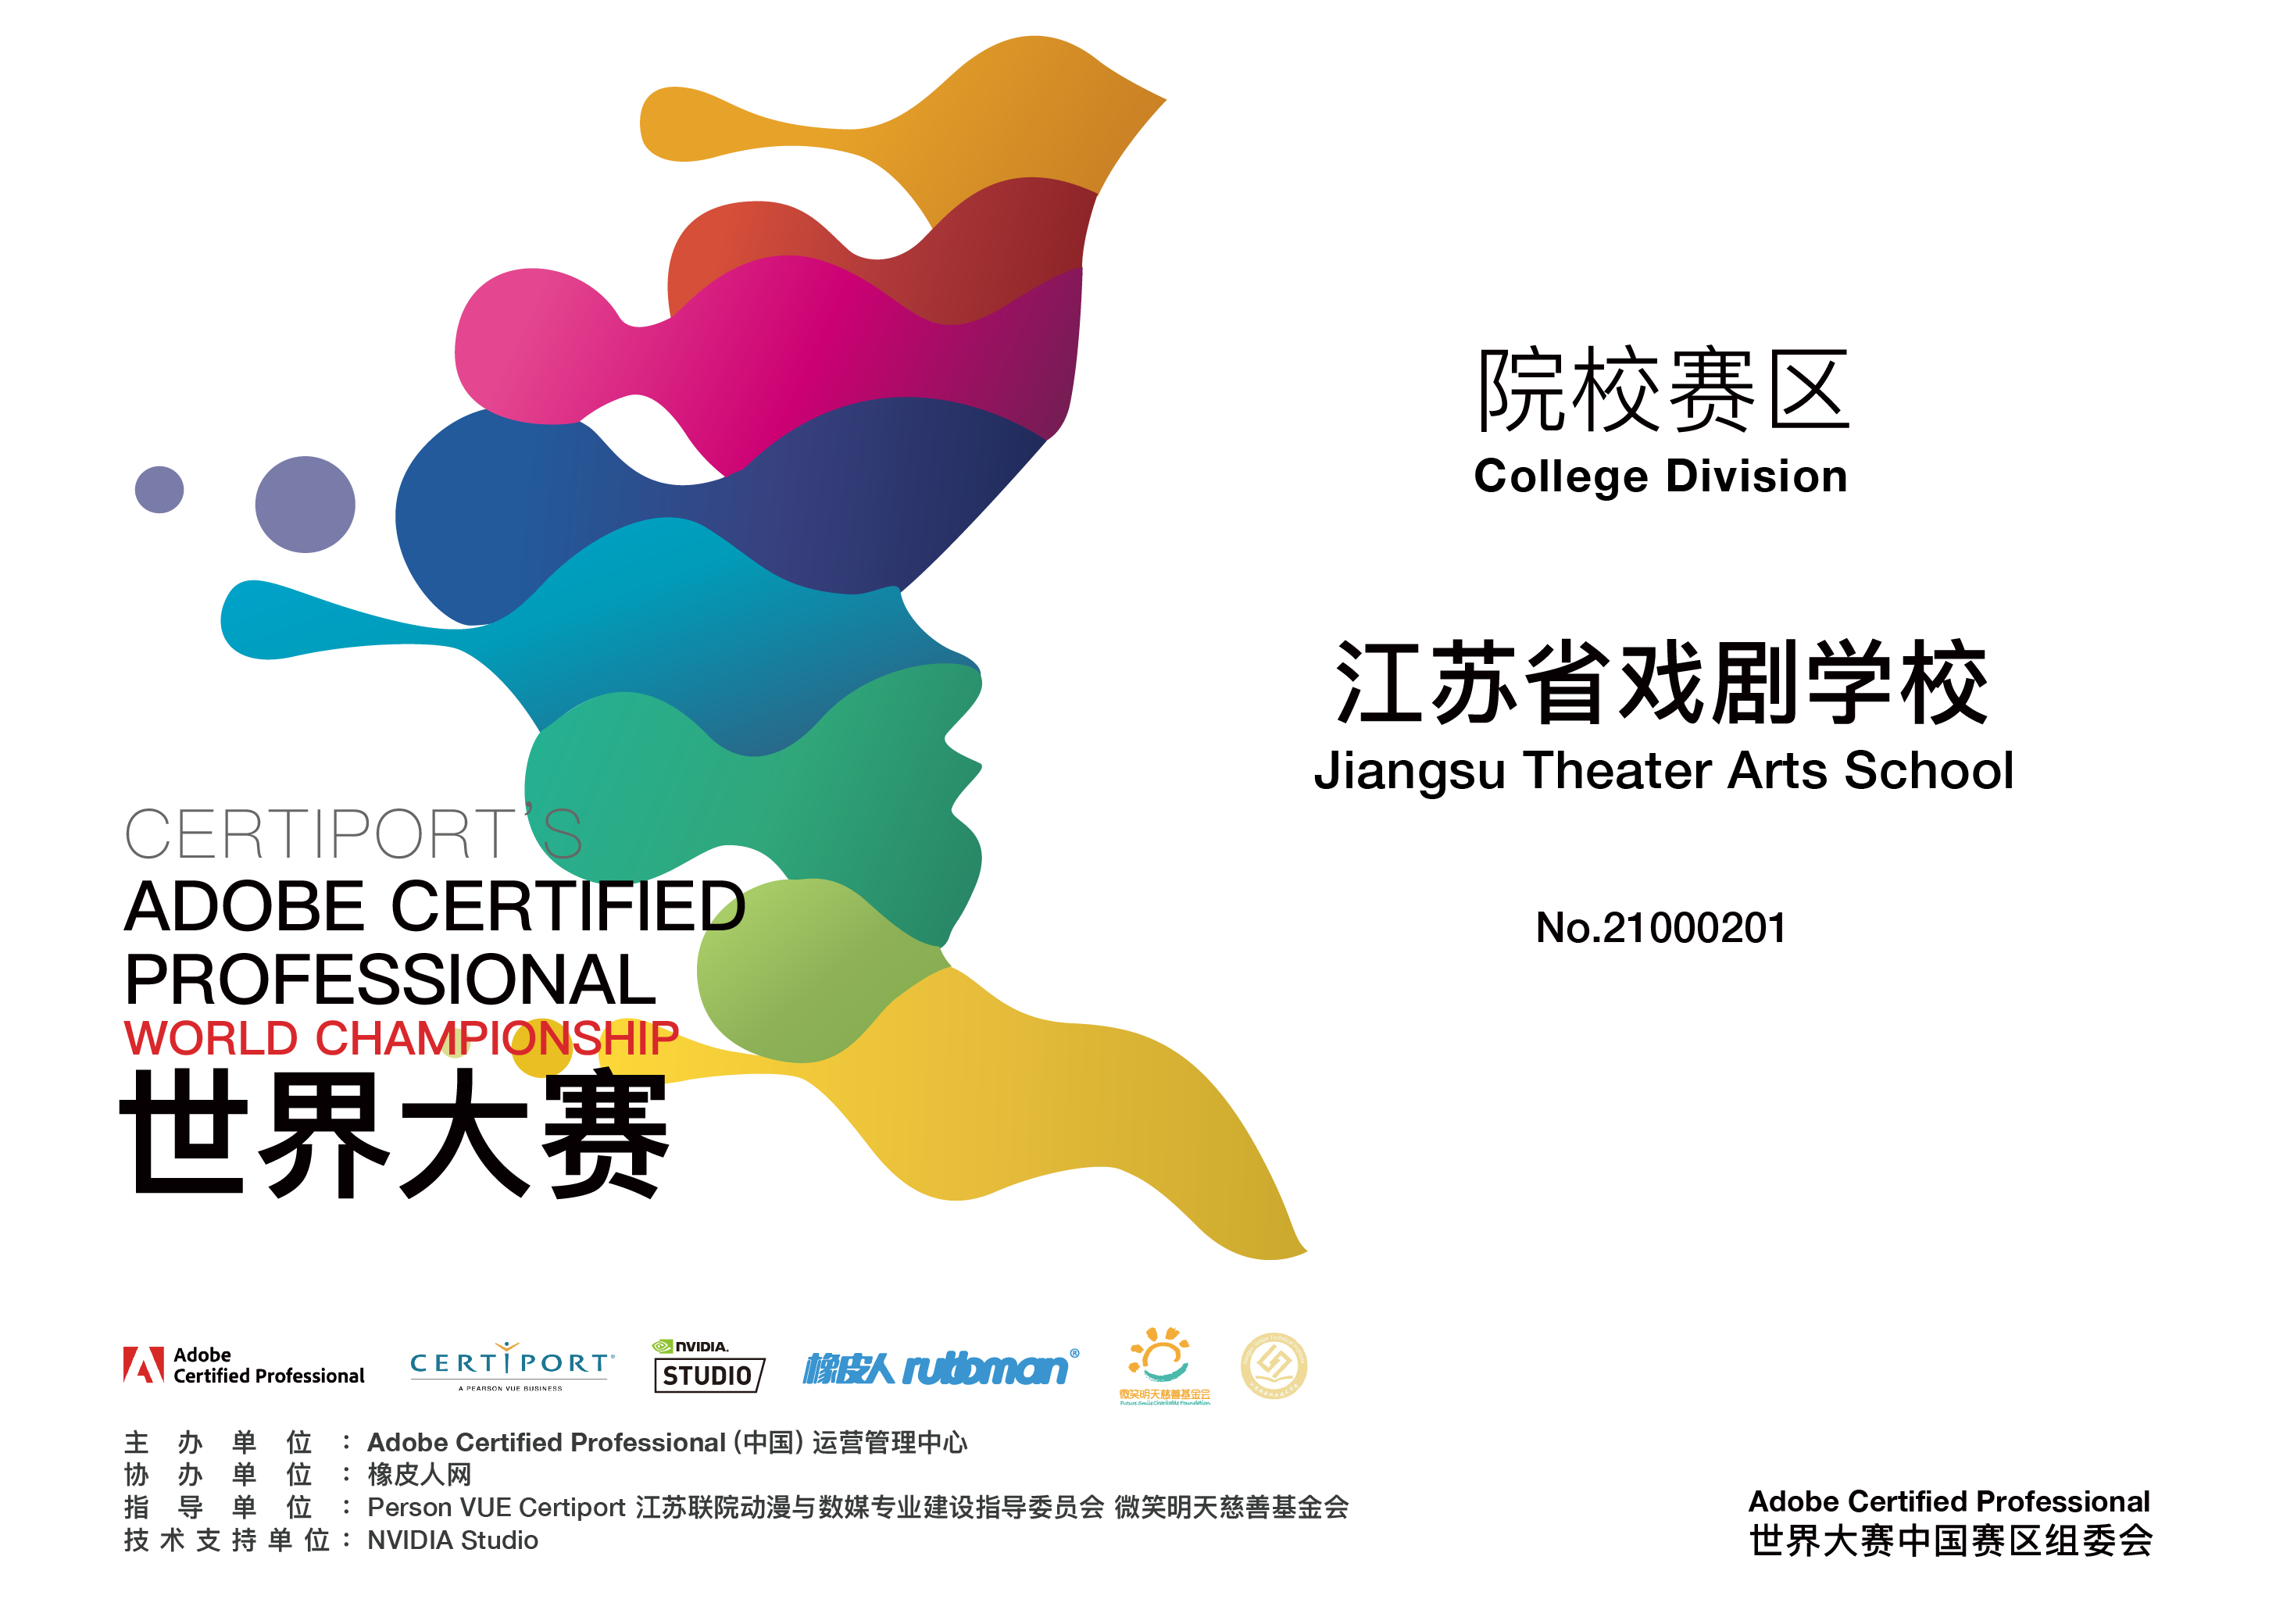 江苏省戏剧学校加入ACP世界大赛，为建成一流艺术学校而努力奋斗